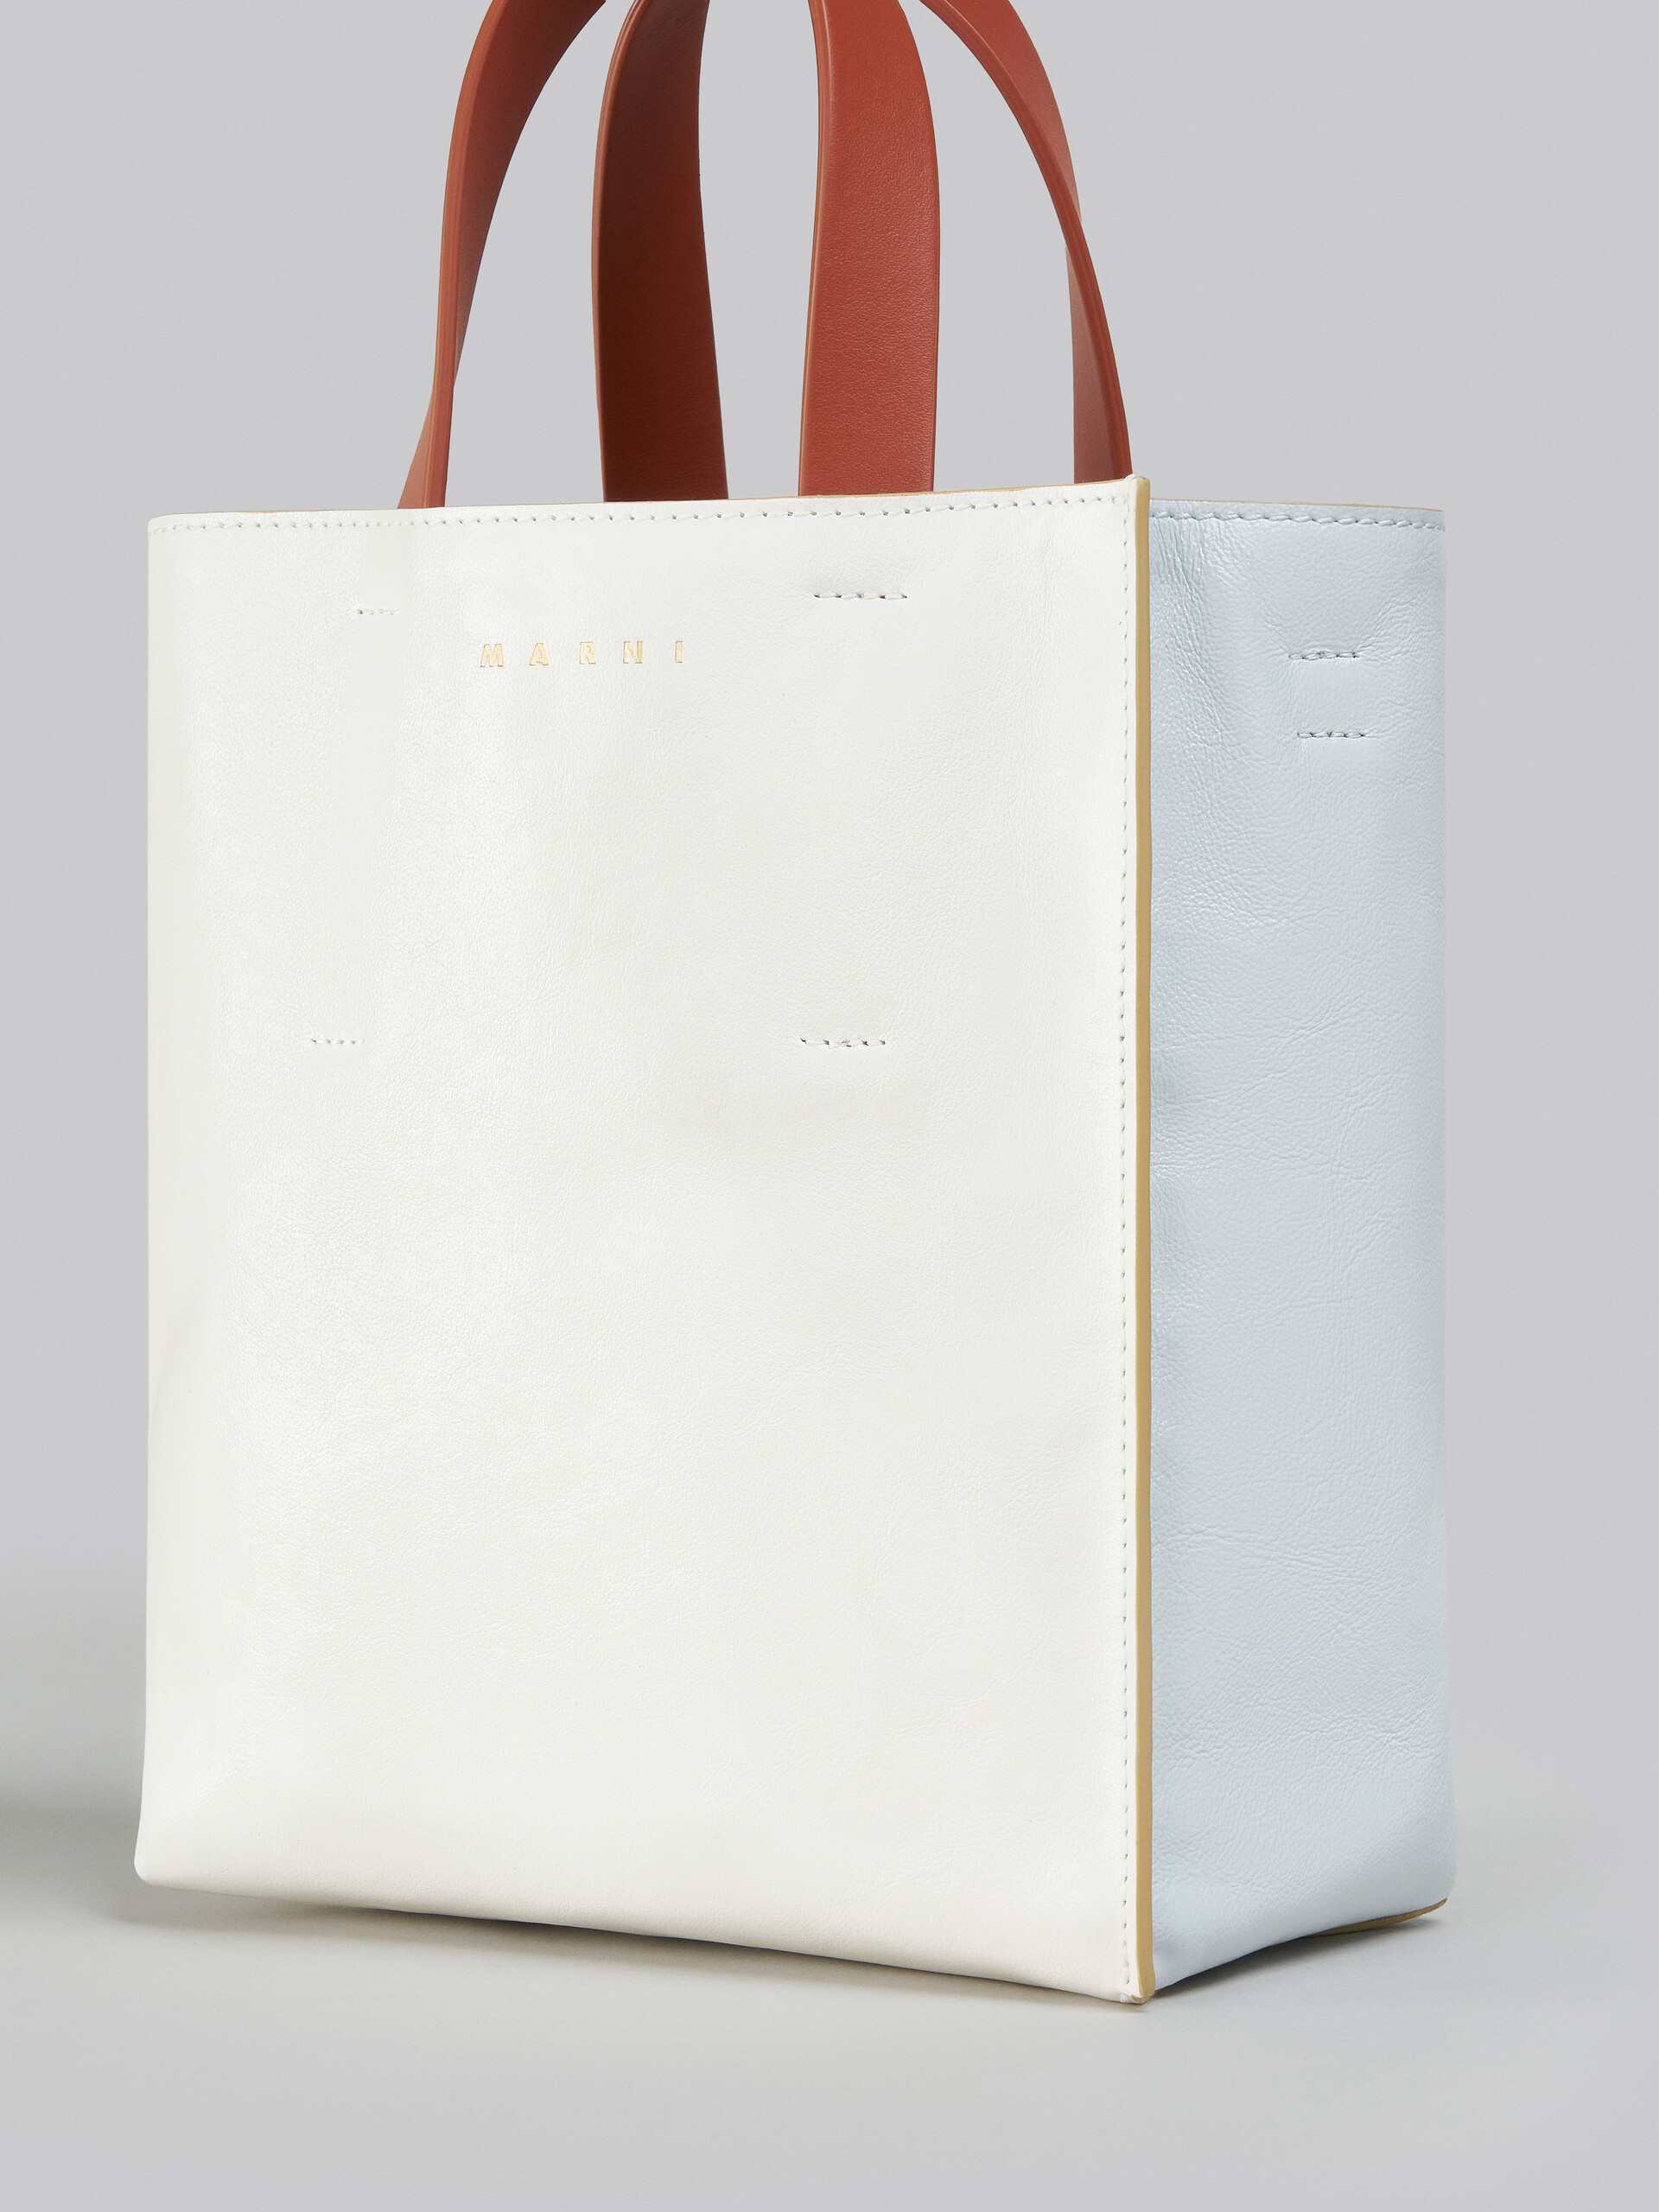 Mini-sac Museo Soft en cuir gris, noir et rouge - Sacs cabas - Image 5